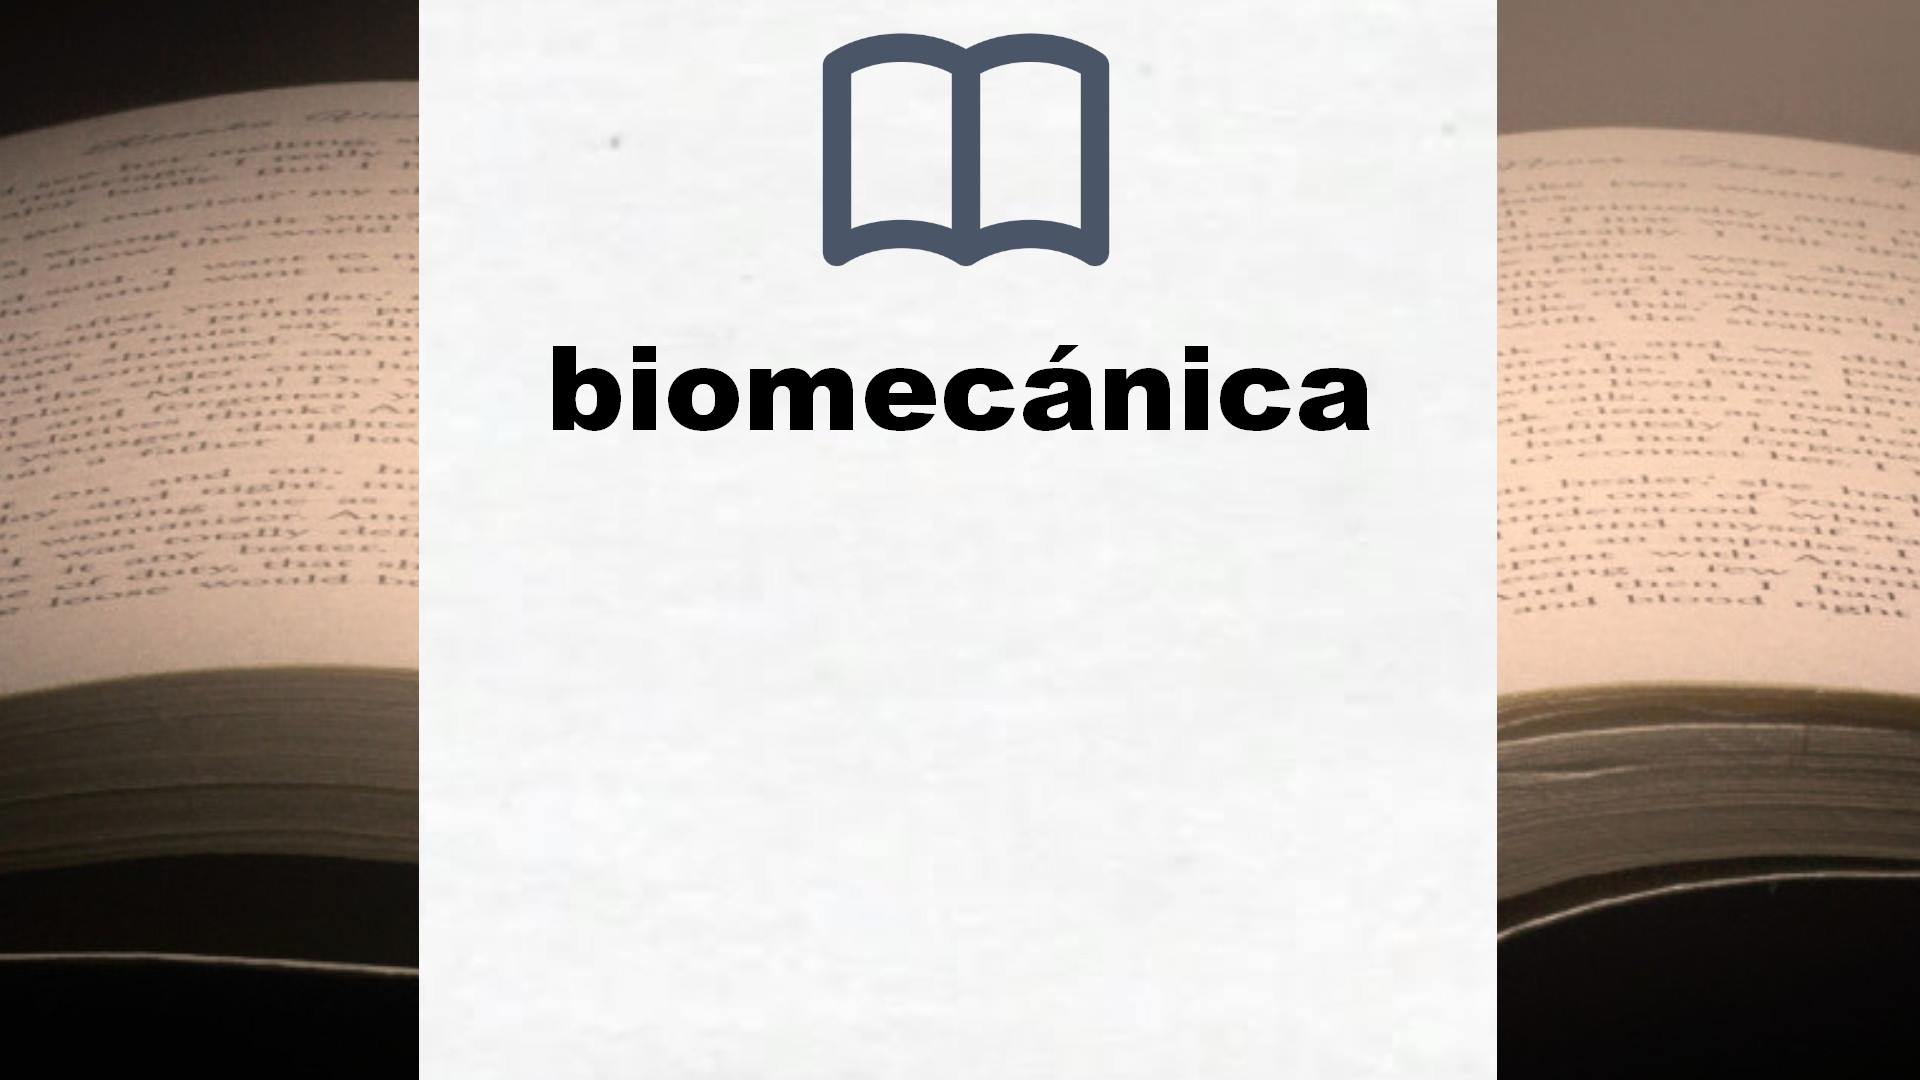 Libros sobre biomecánica